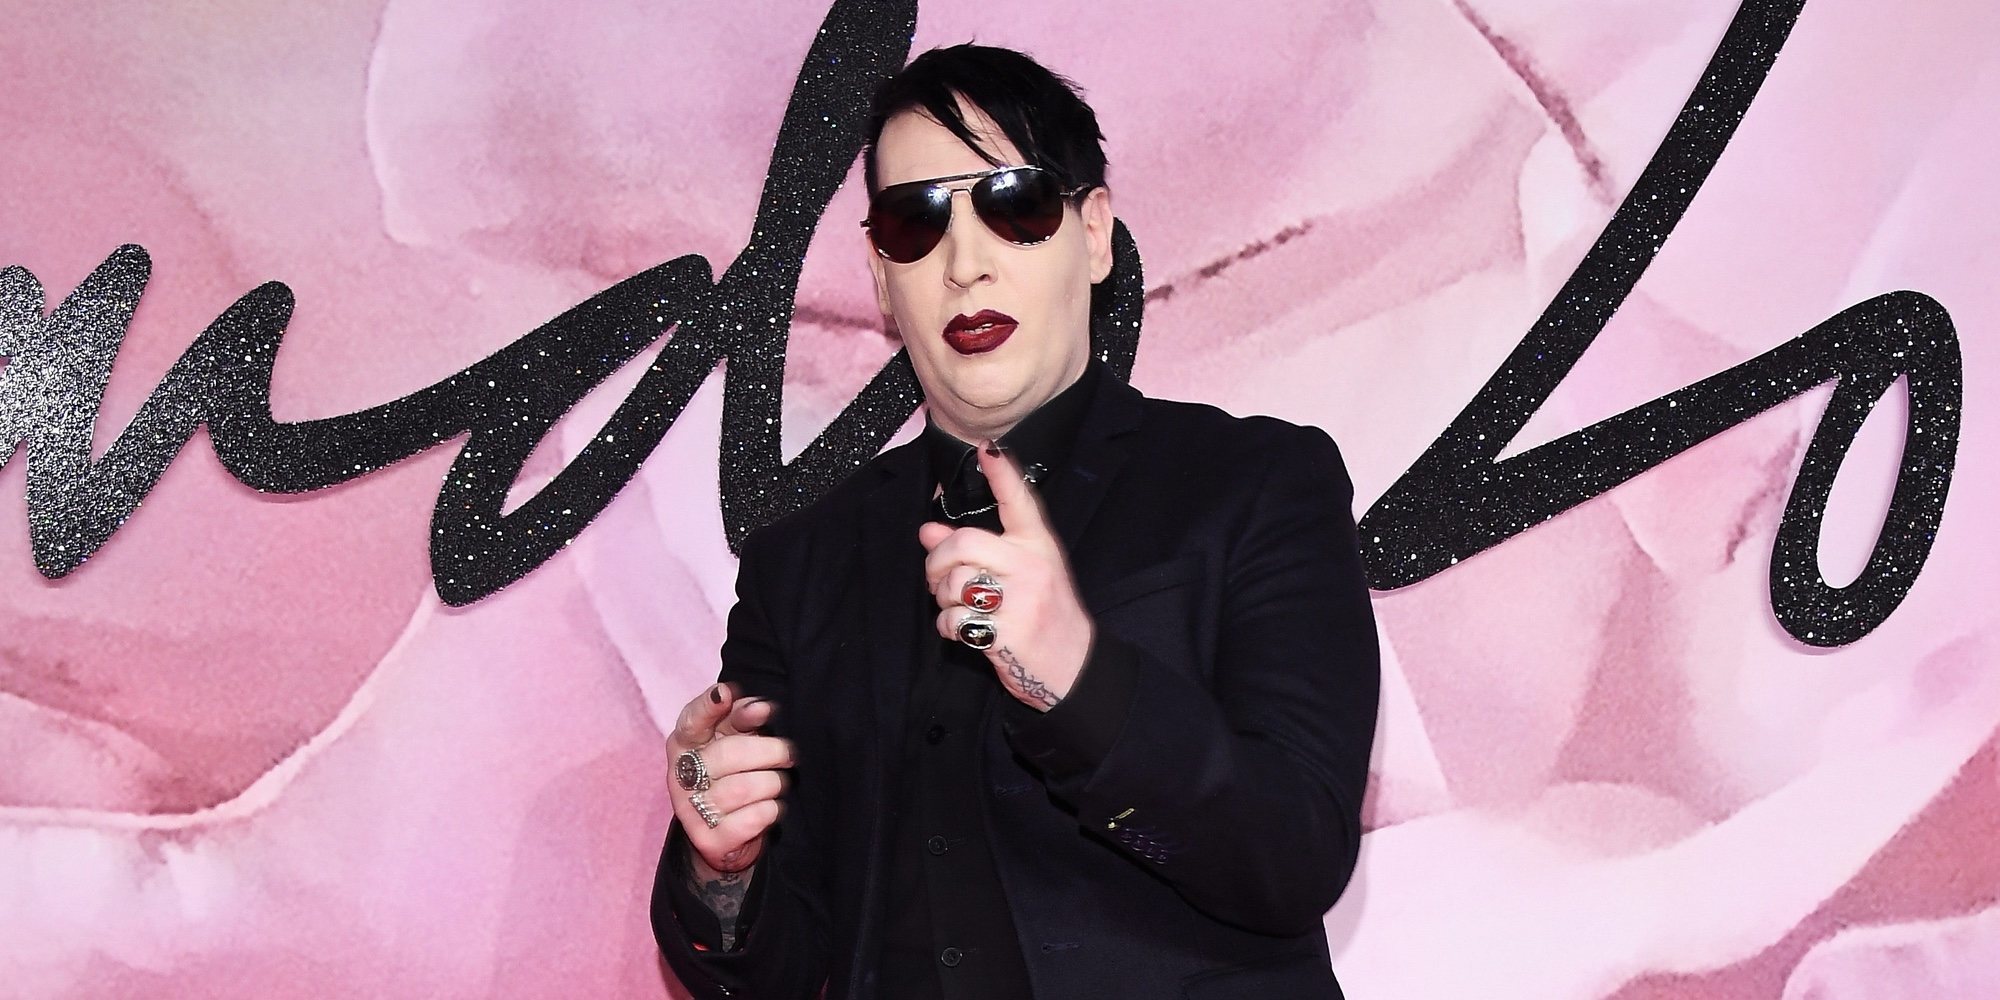 Marilyn Manson se desmaya en mitad de un concierto en Texas